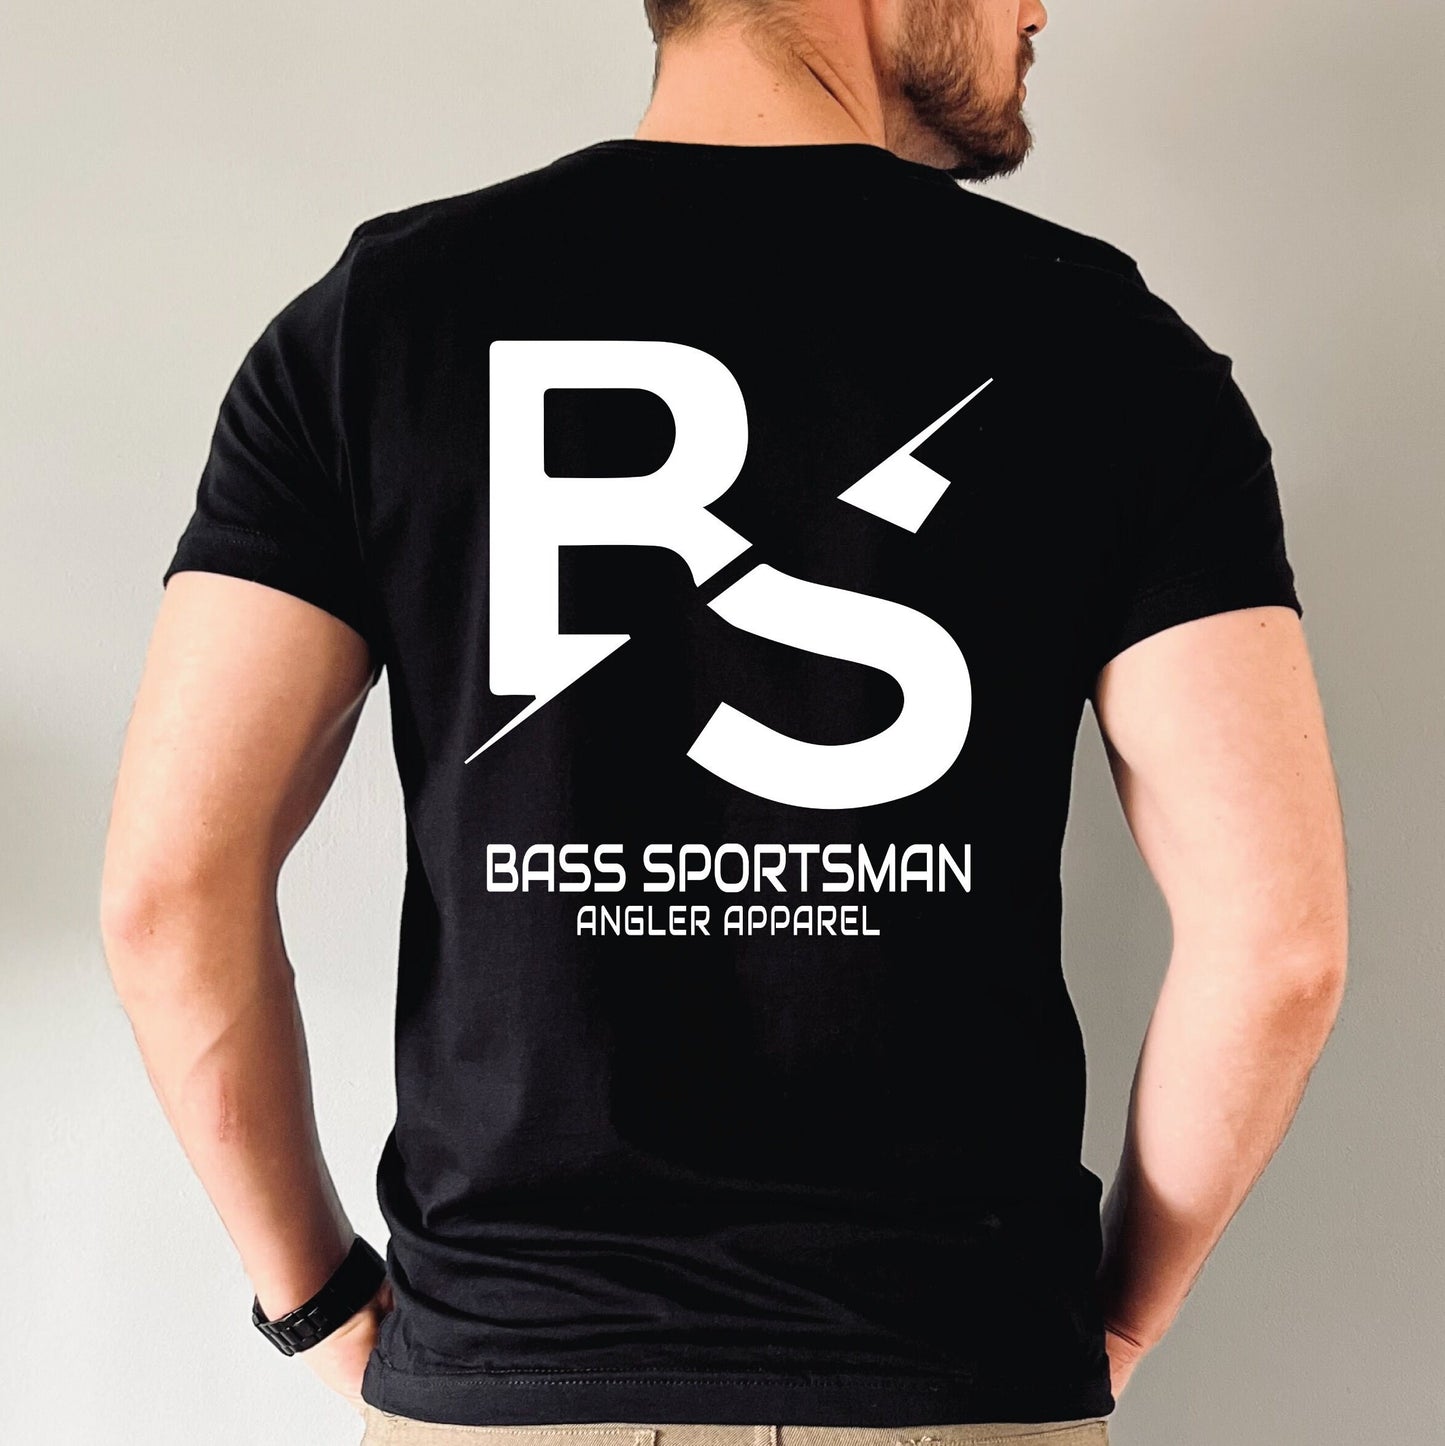 Bass Sportsman T-Shirt